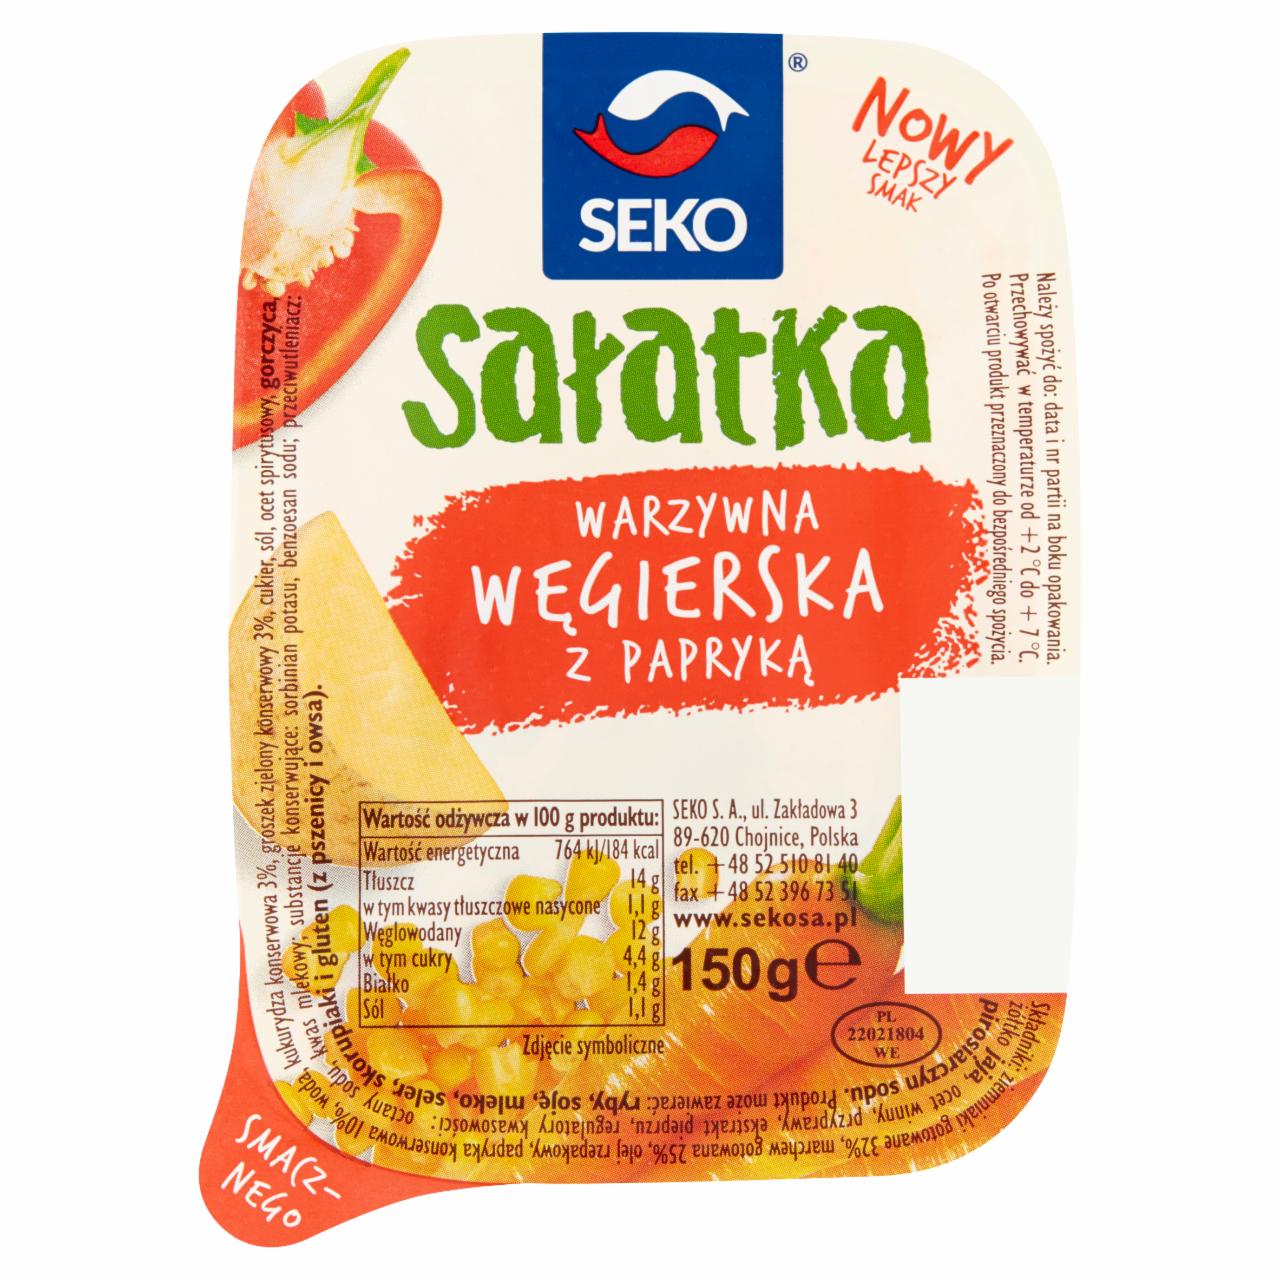 Zdjęcia - Seko Sałatka warzywna węgierska z papryką 150 g